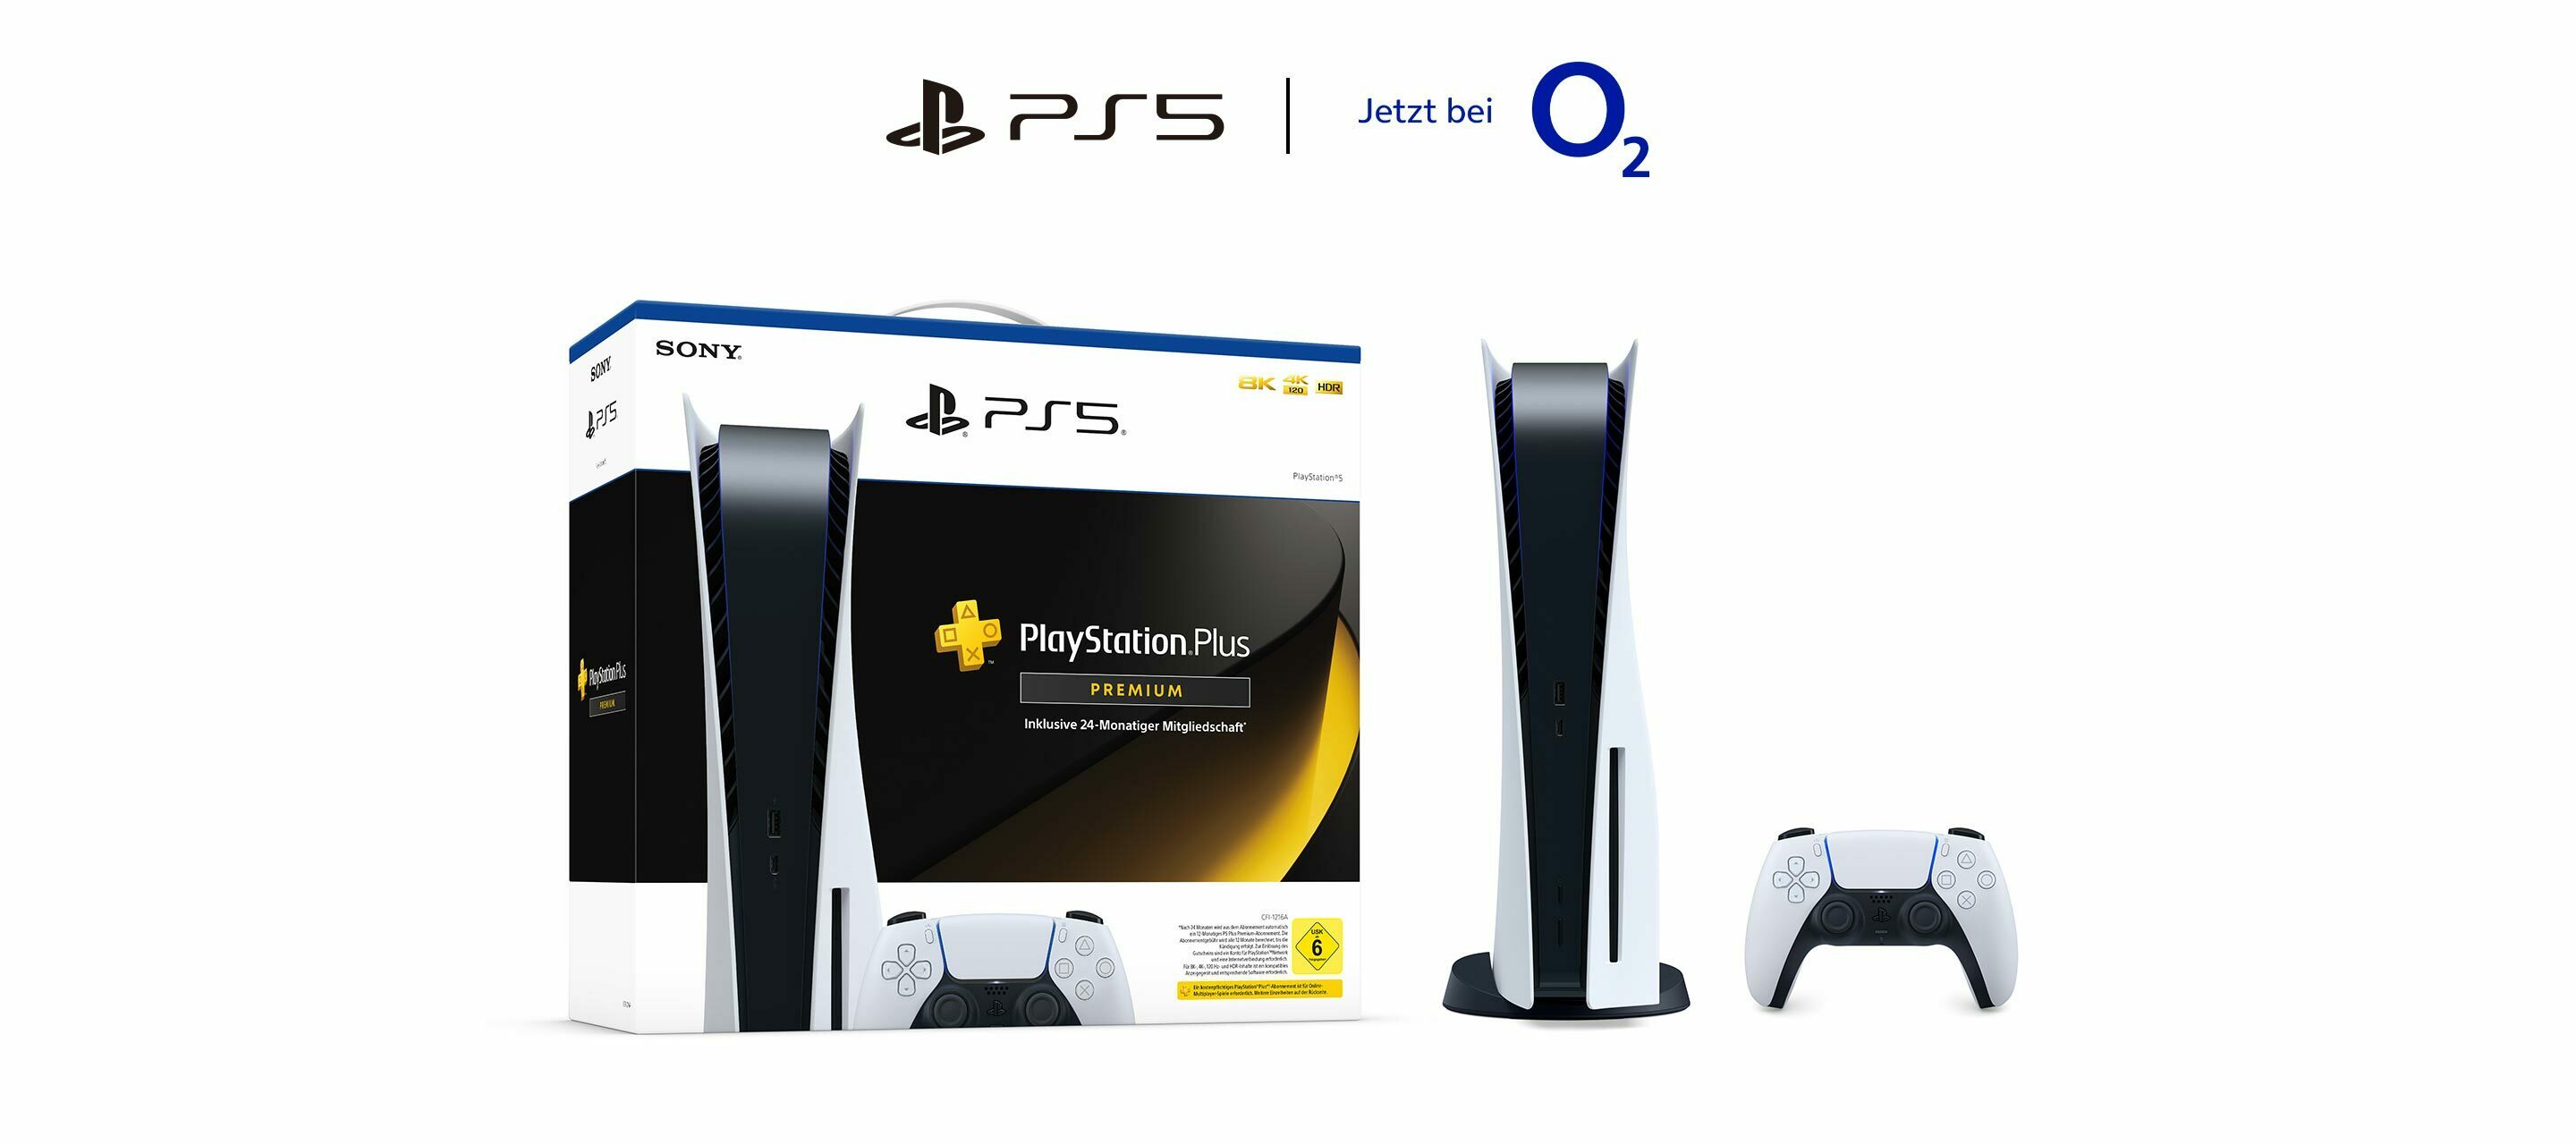 Das vielleicht aufregendste Gamingbundle: PlayStation 5 mit gratis PlayStation Plus Premium